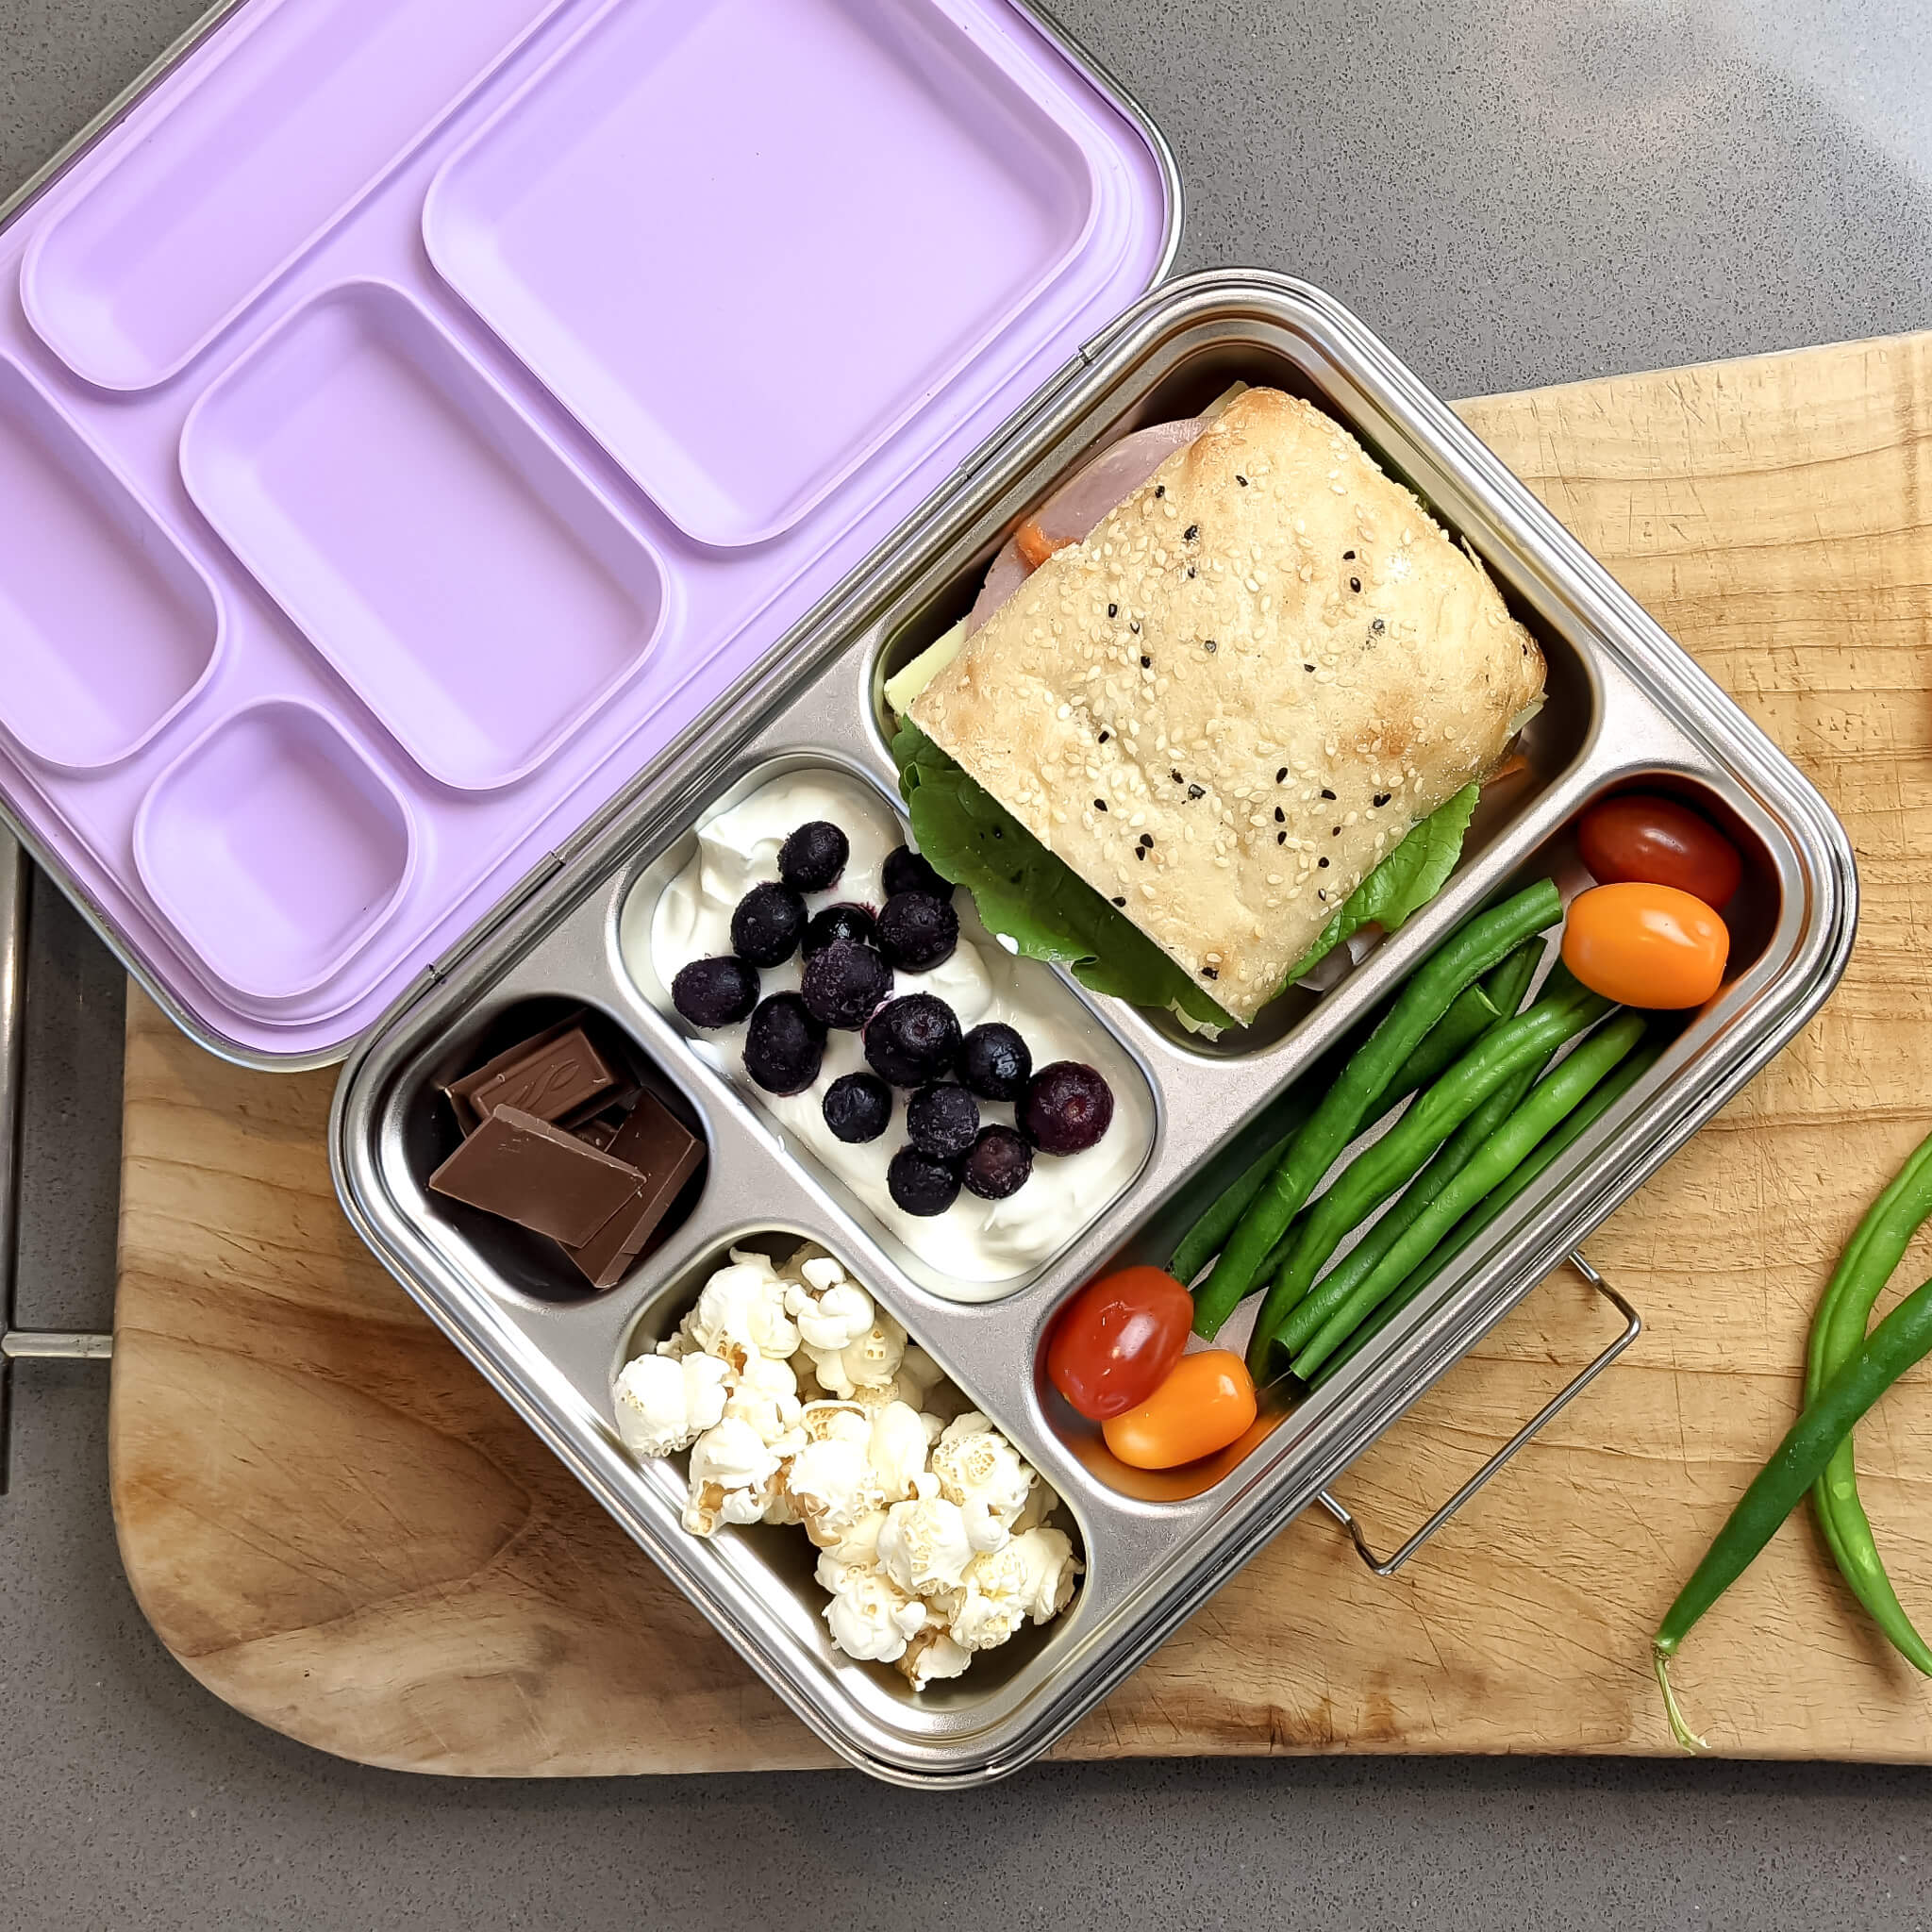 Omiebox Bento Lunch Box // Kids Lunch Box Ideas - Ann Le Do